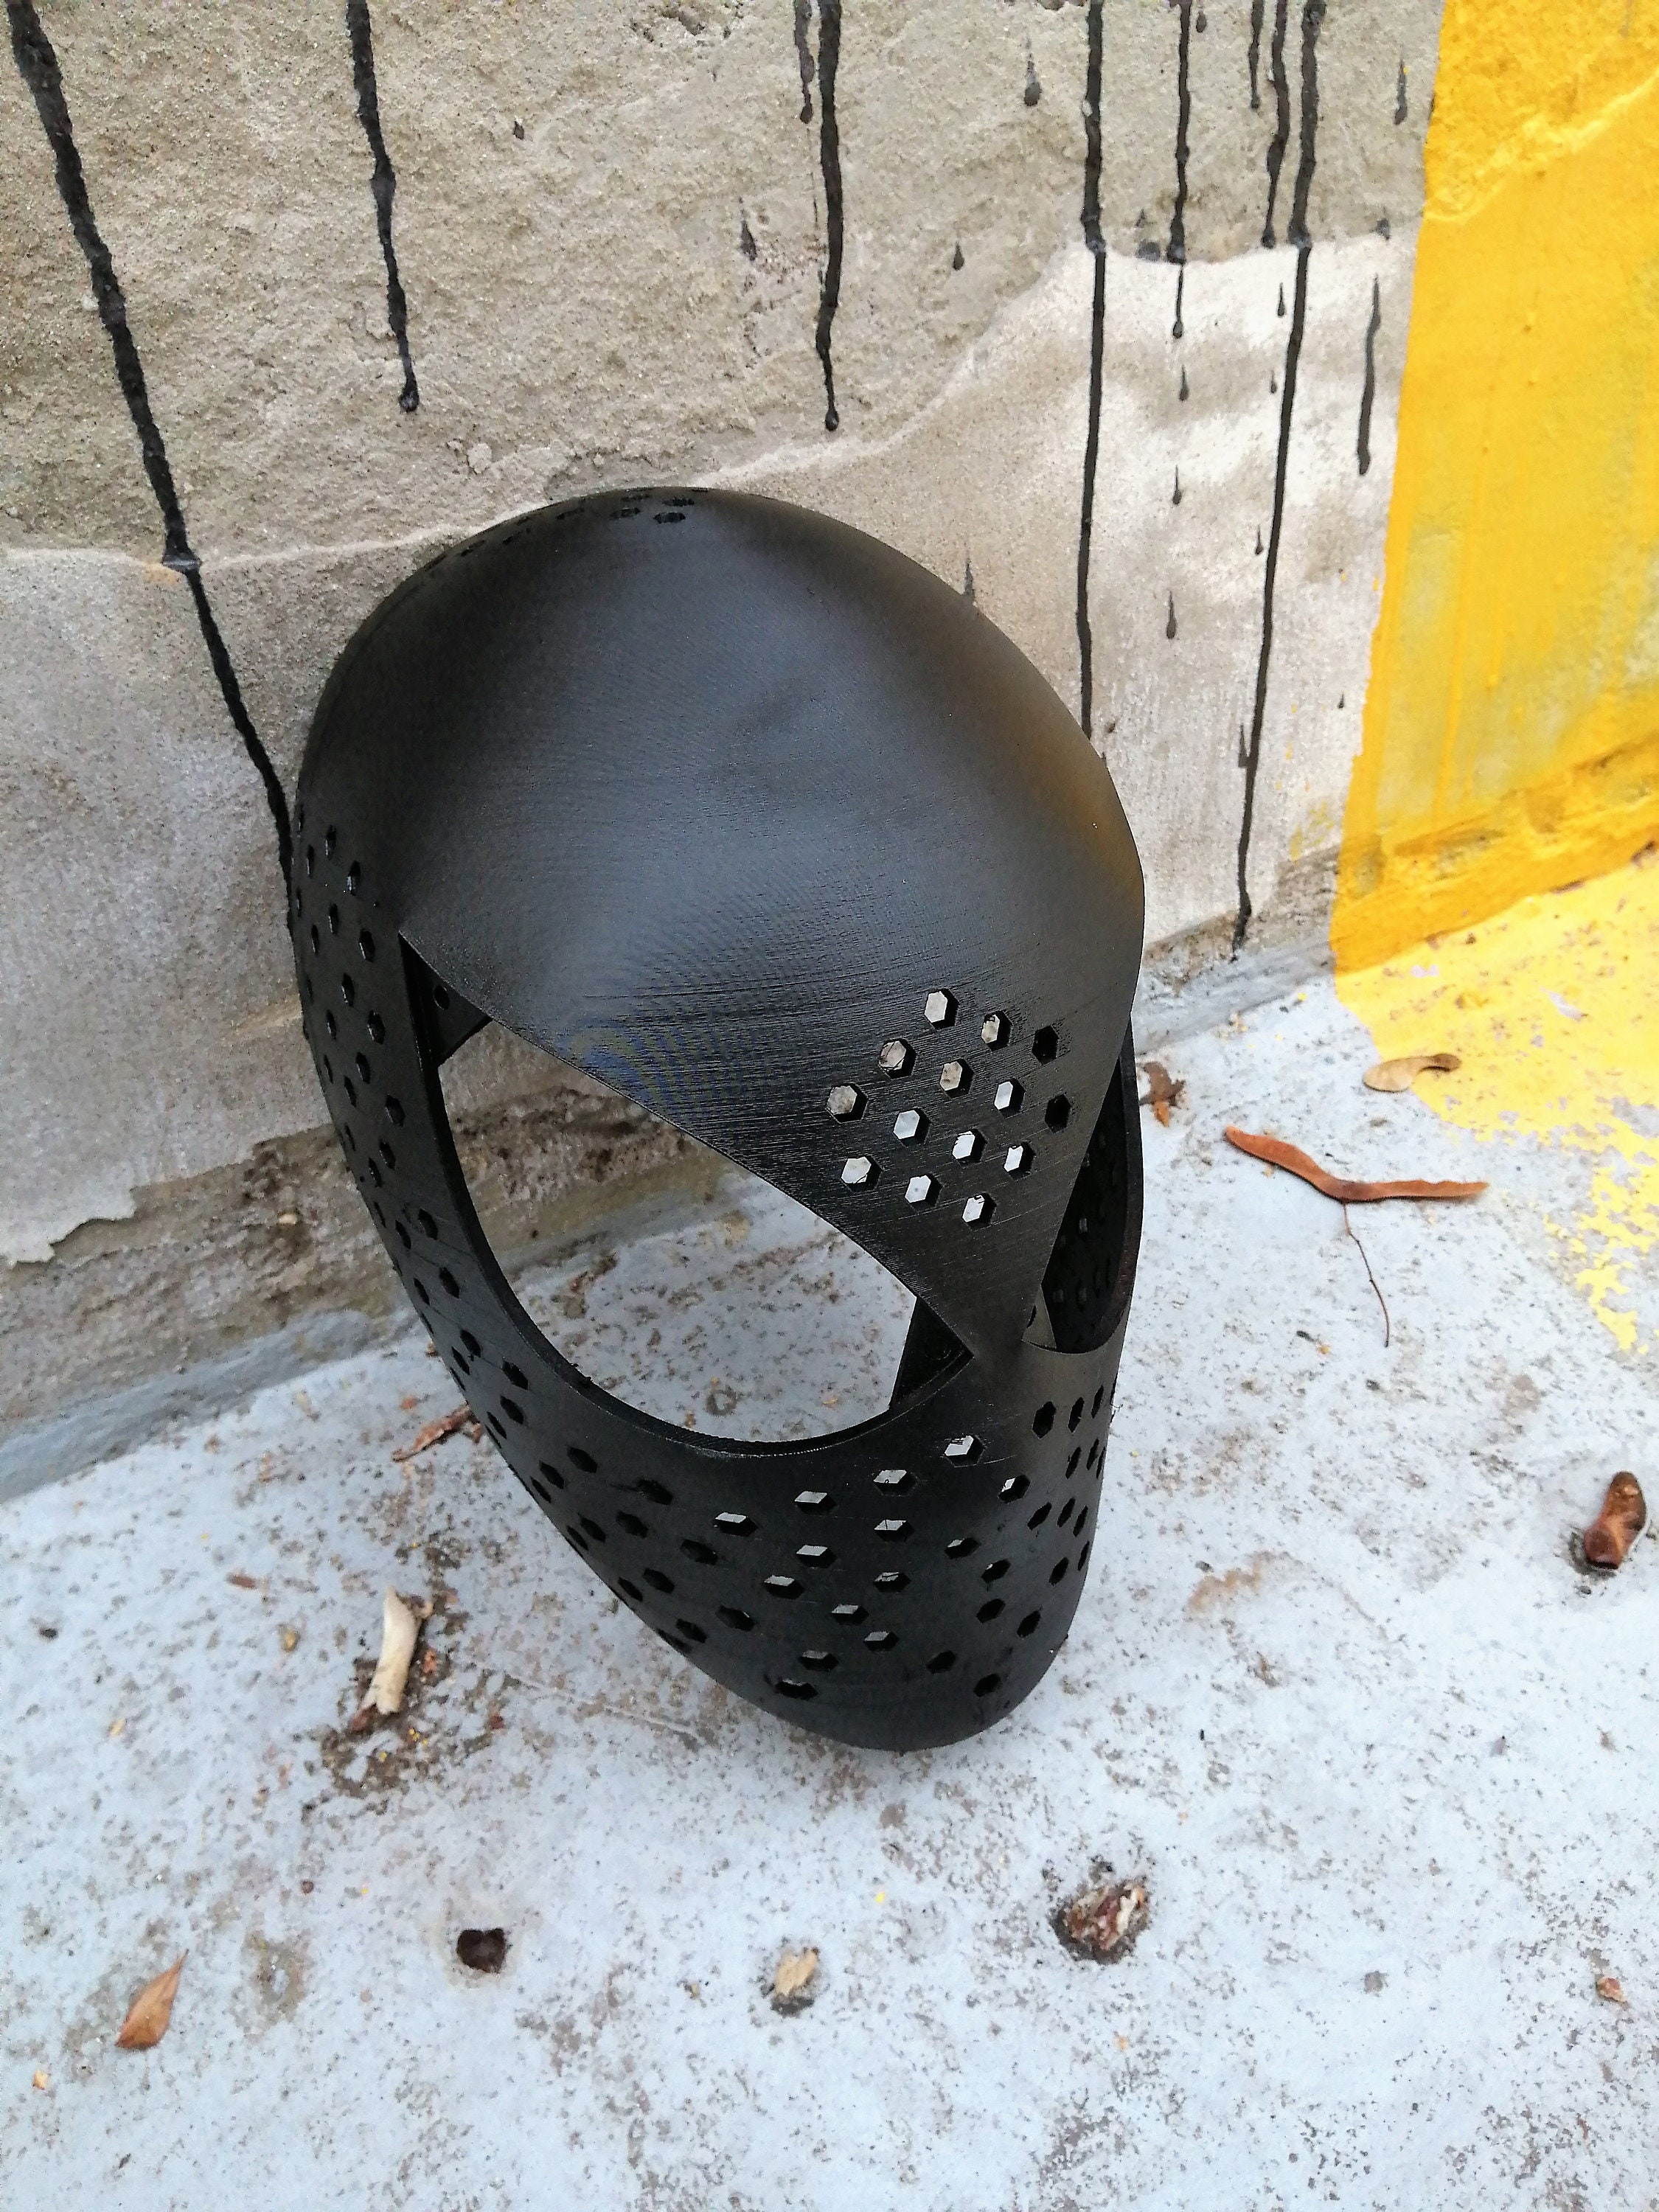 spider-man-mask-3d-model-mask-spider-man-3d-model-v3-print-printable